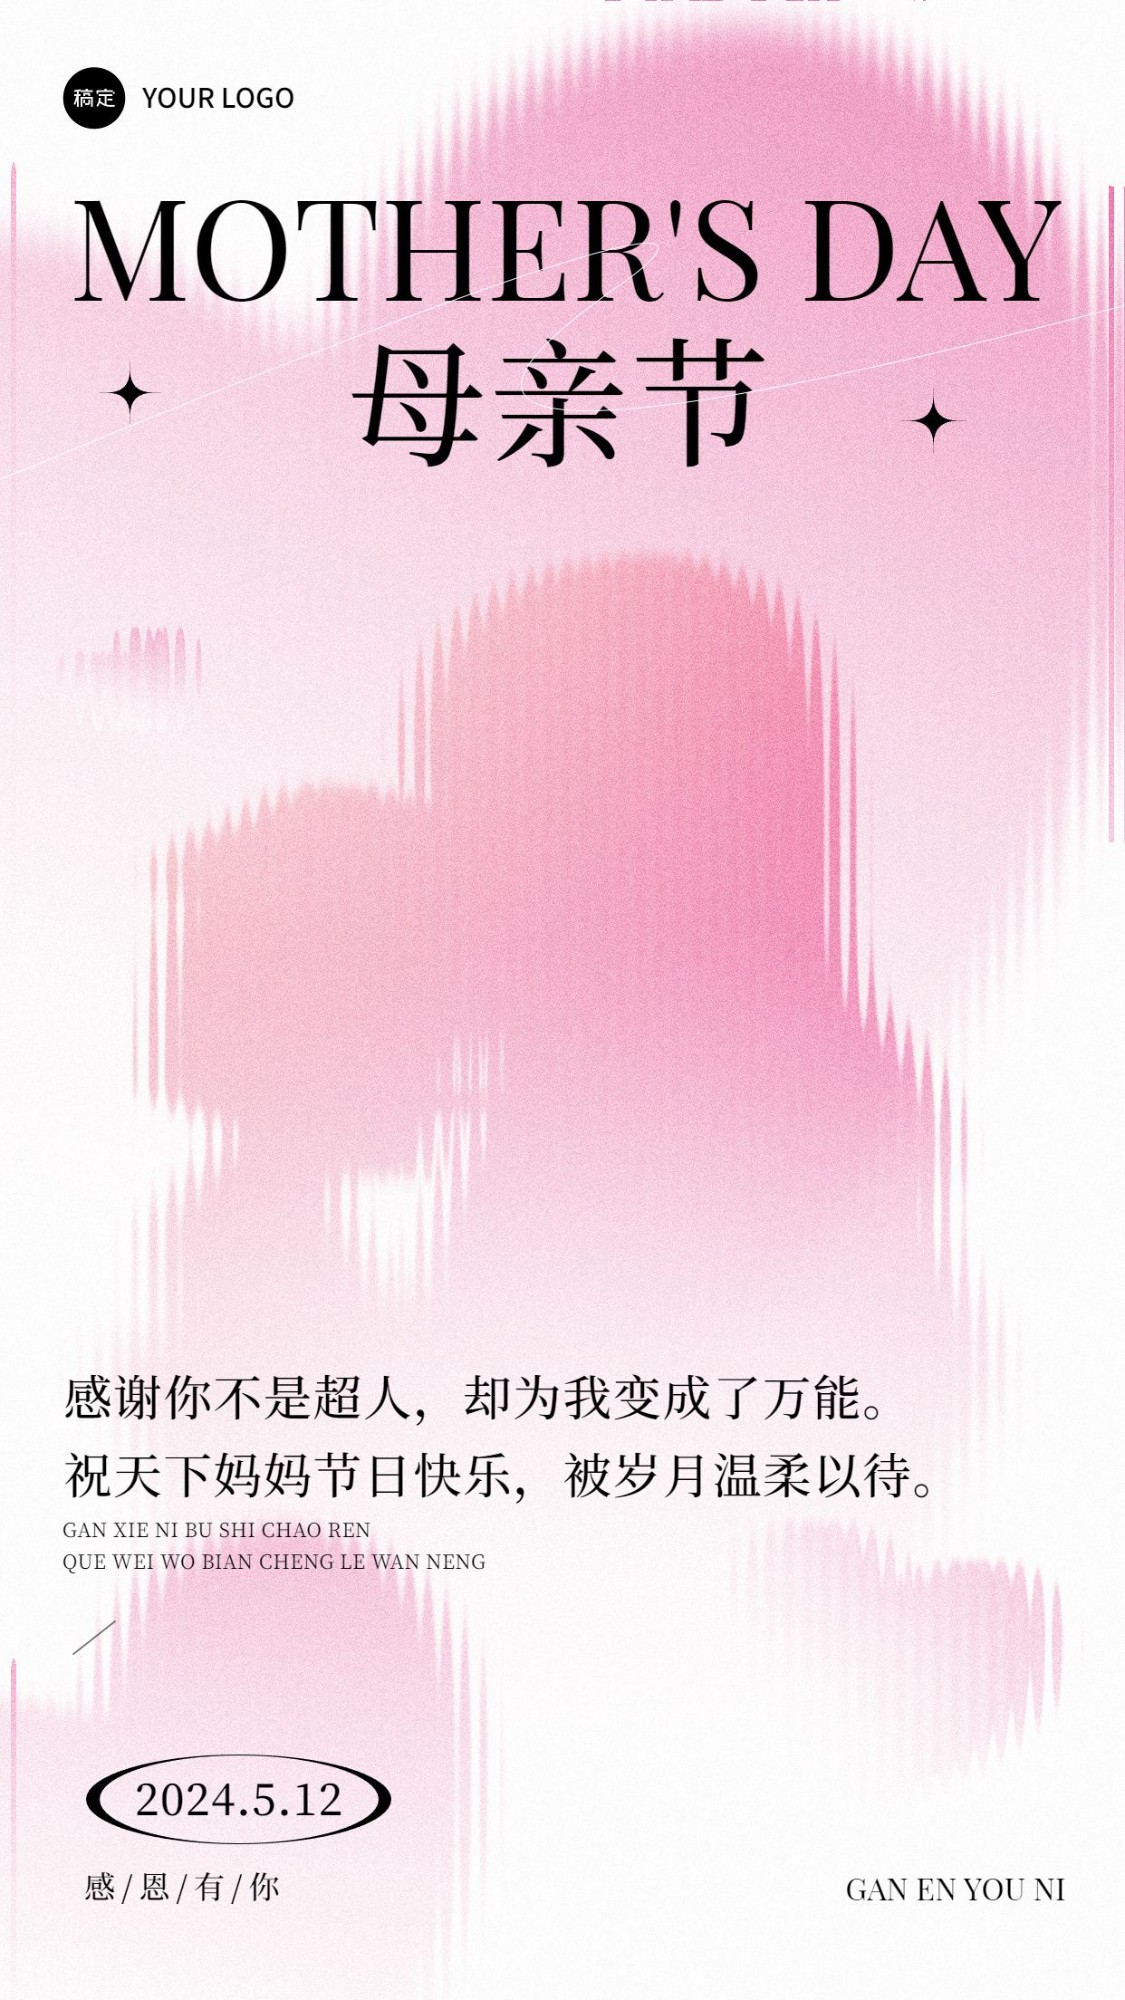 企业母亲节节日祝福贺卡剪影插画手机海报